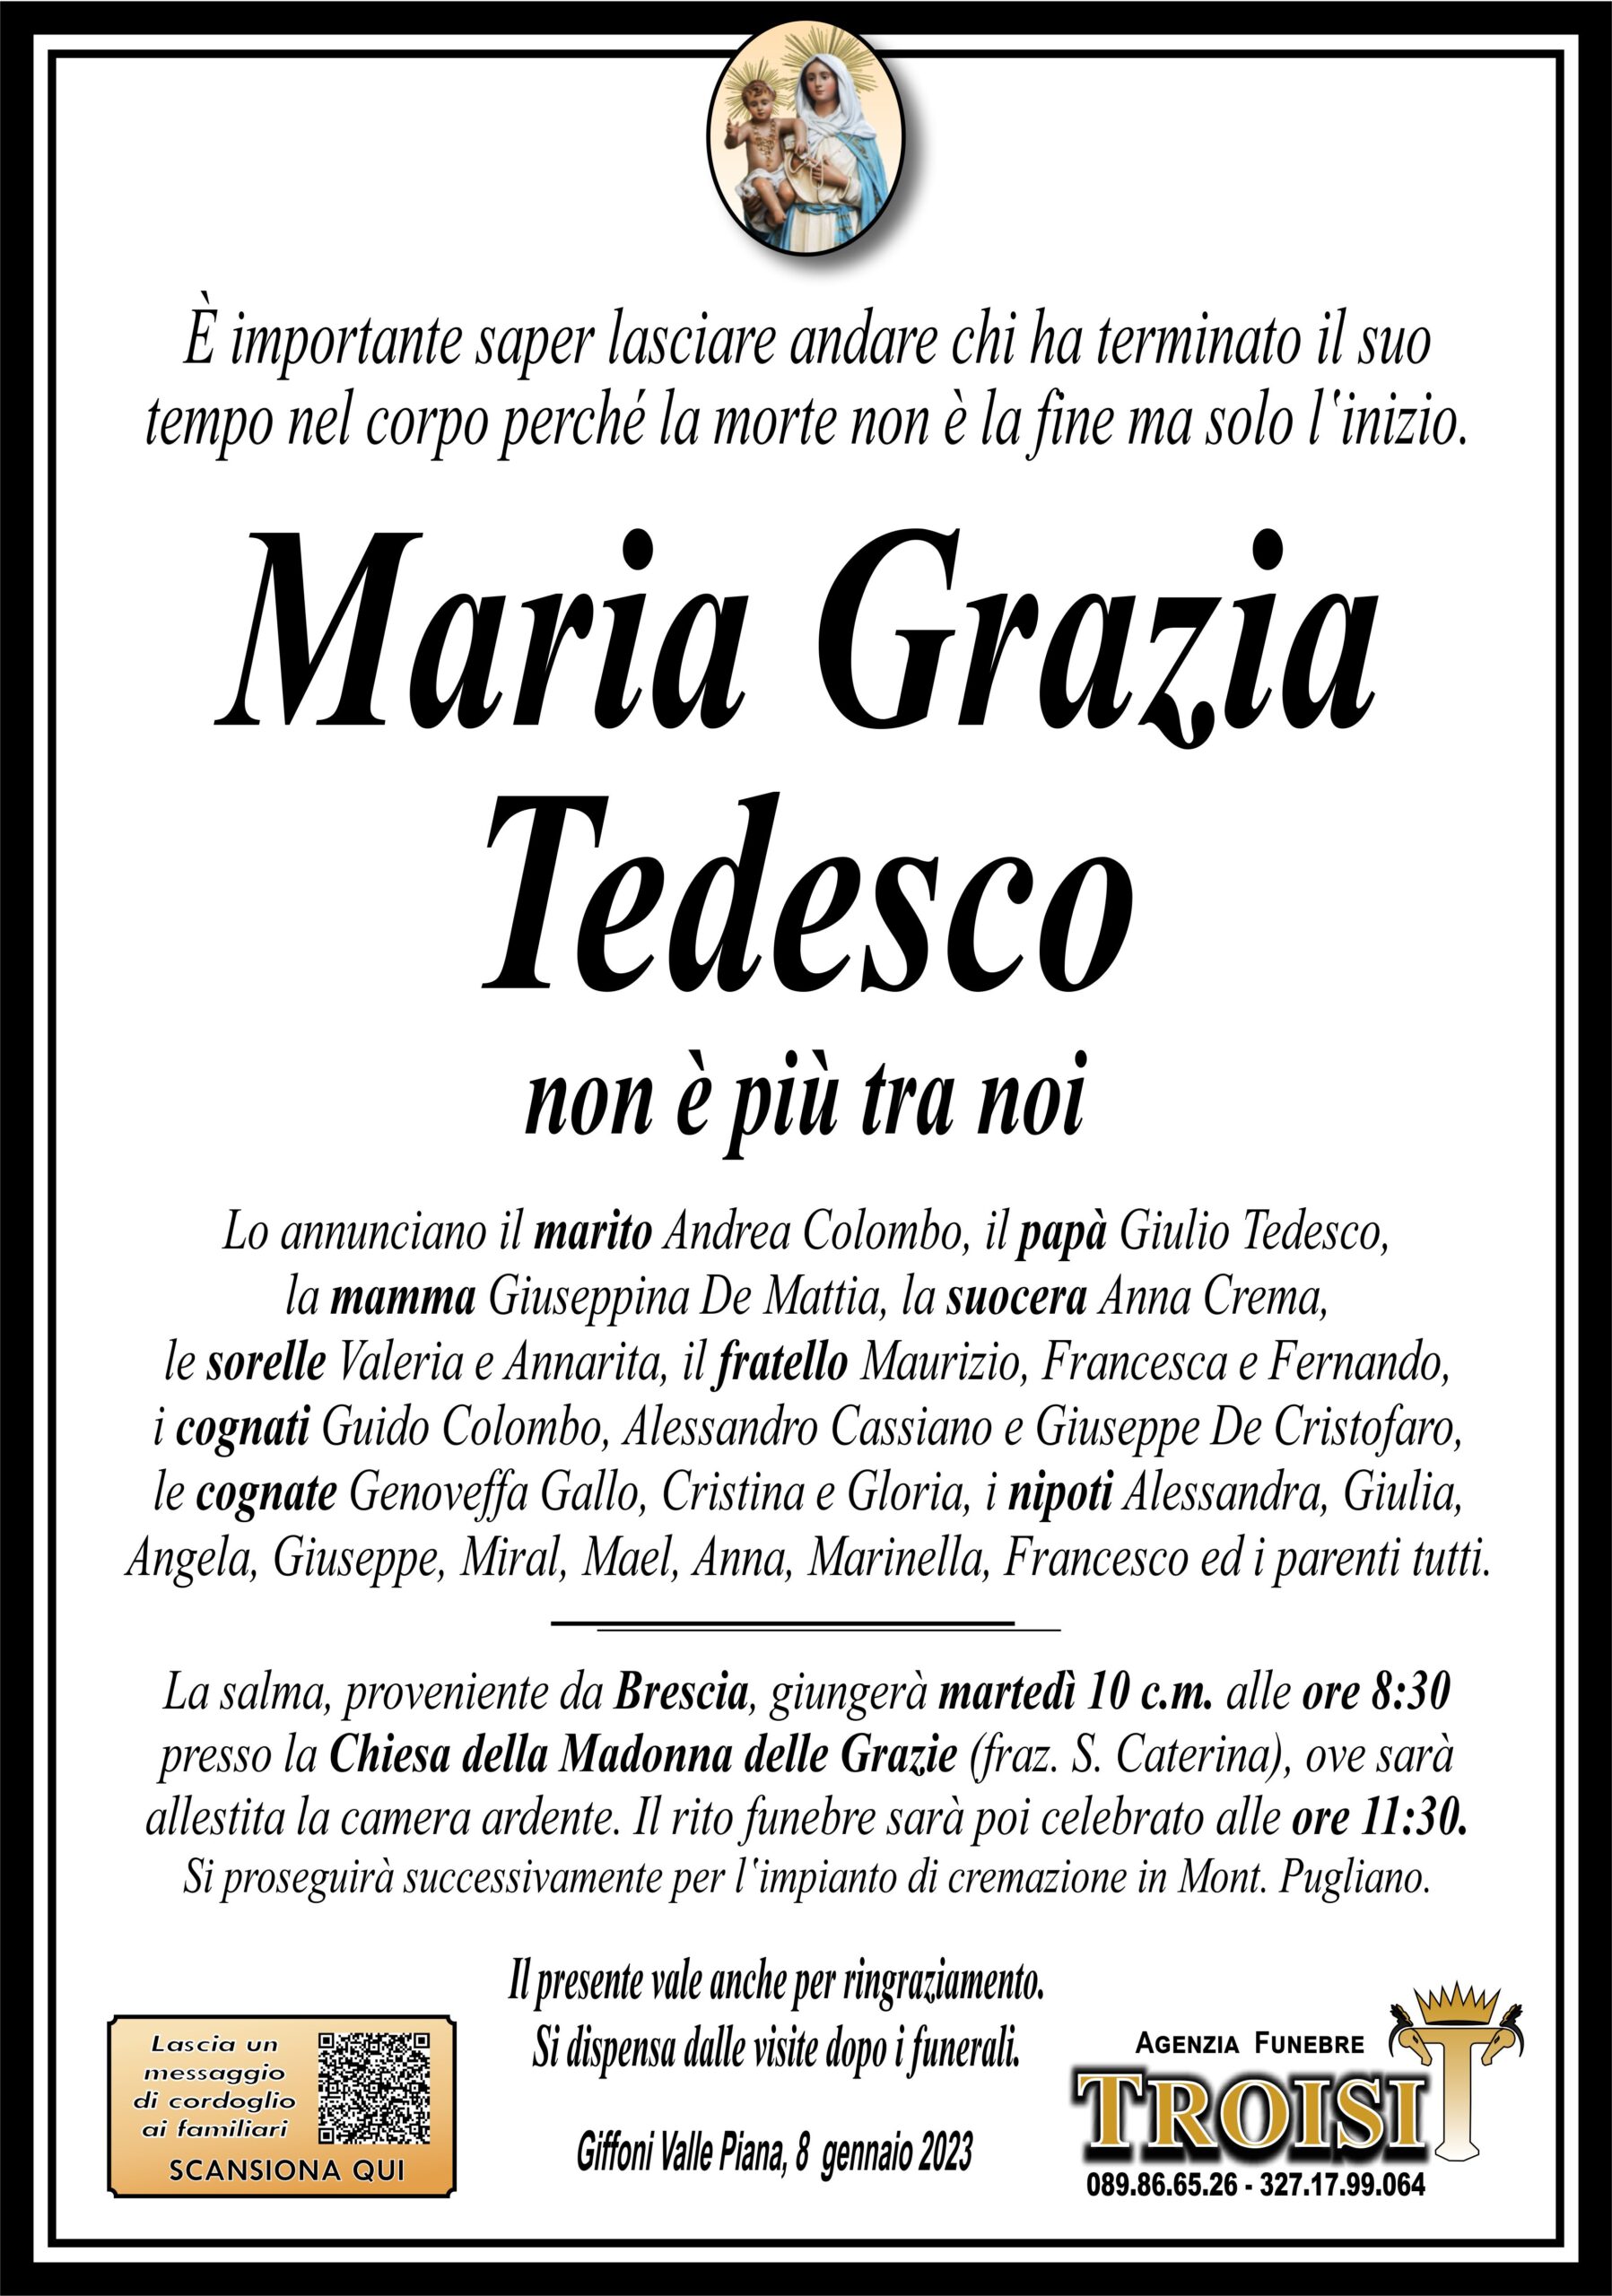 MARIA GRAZIA TEDESCO